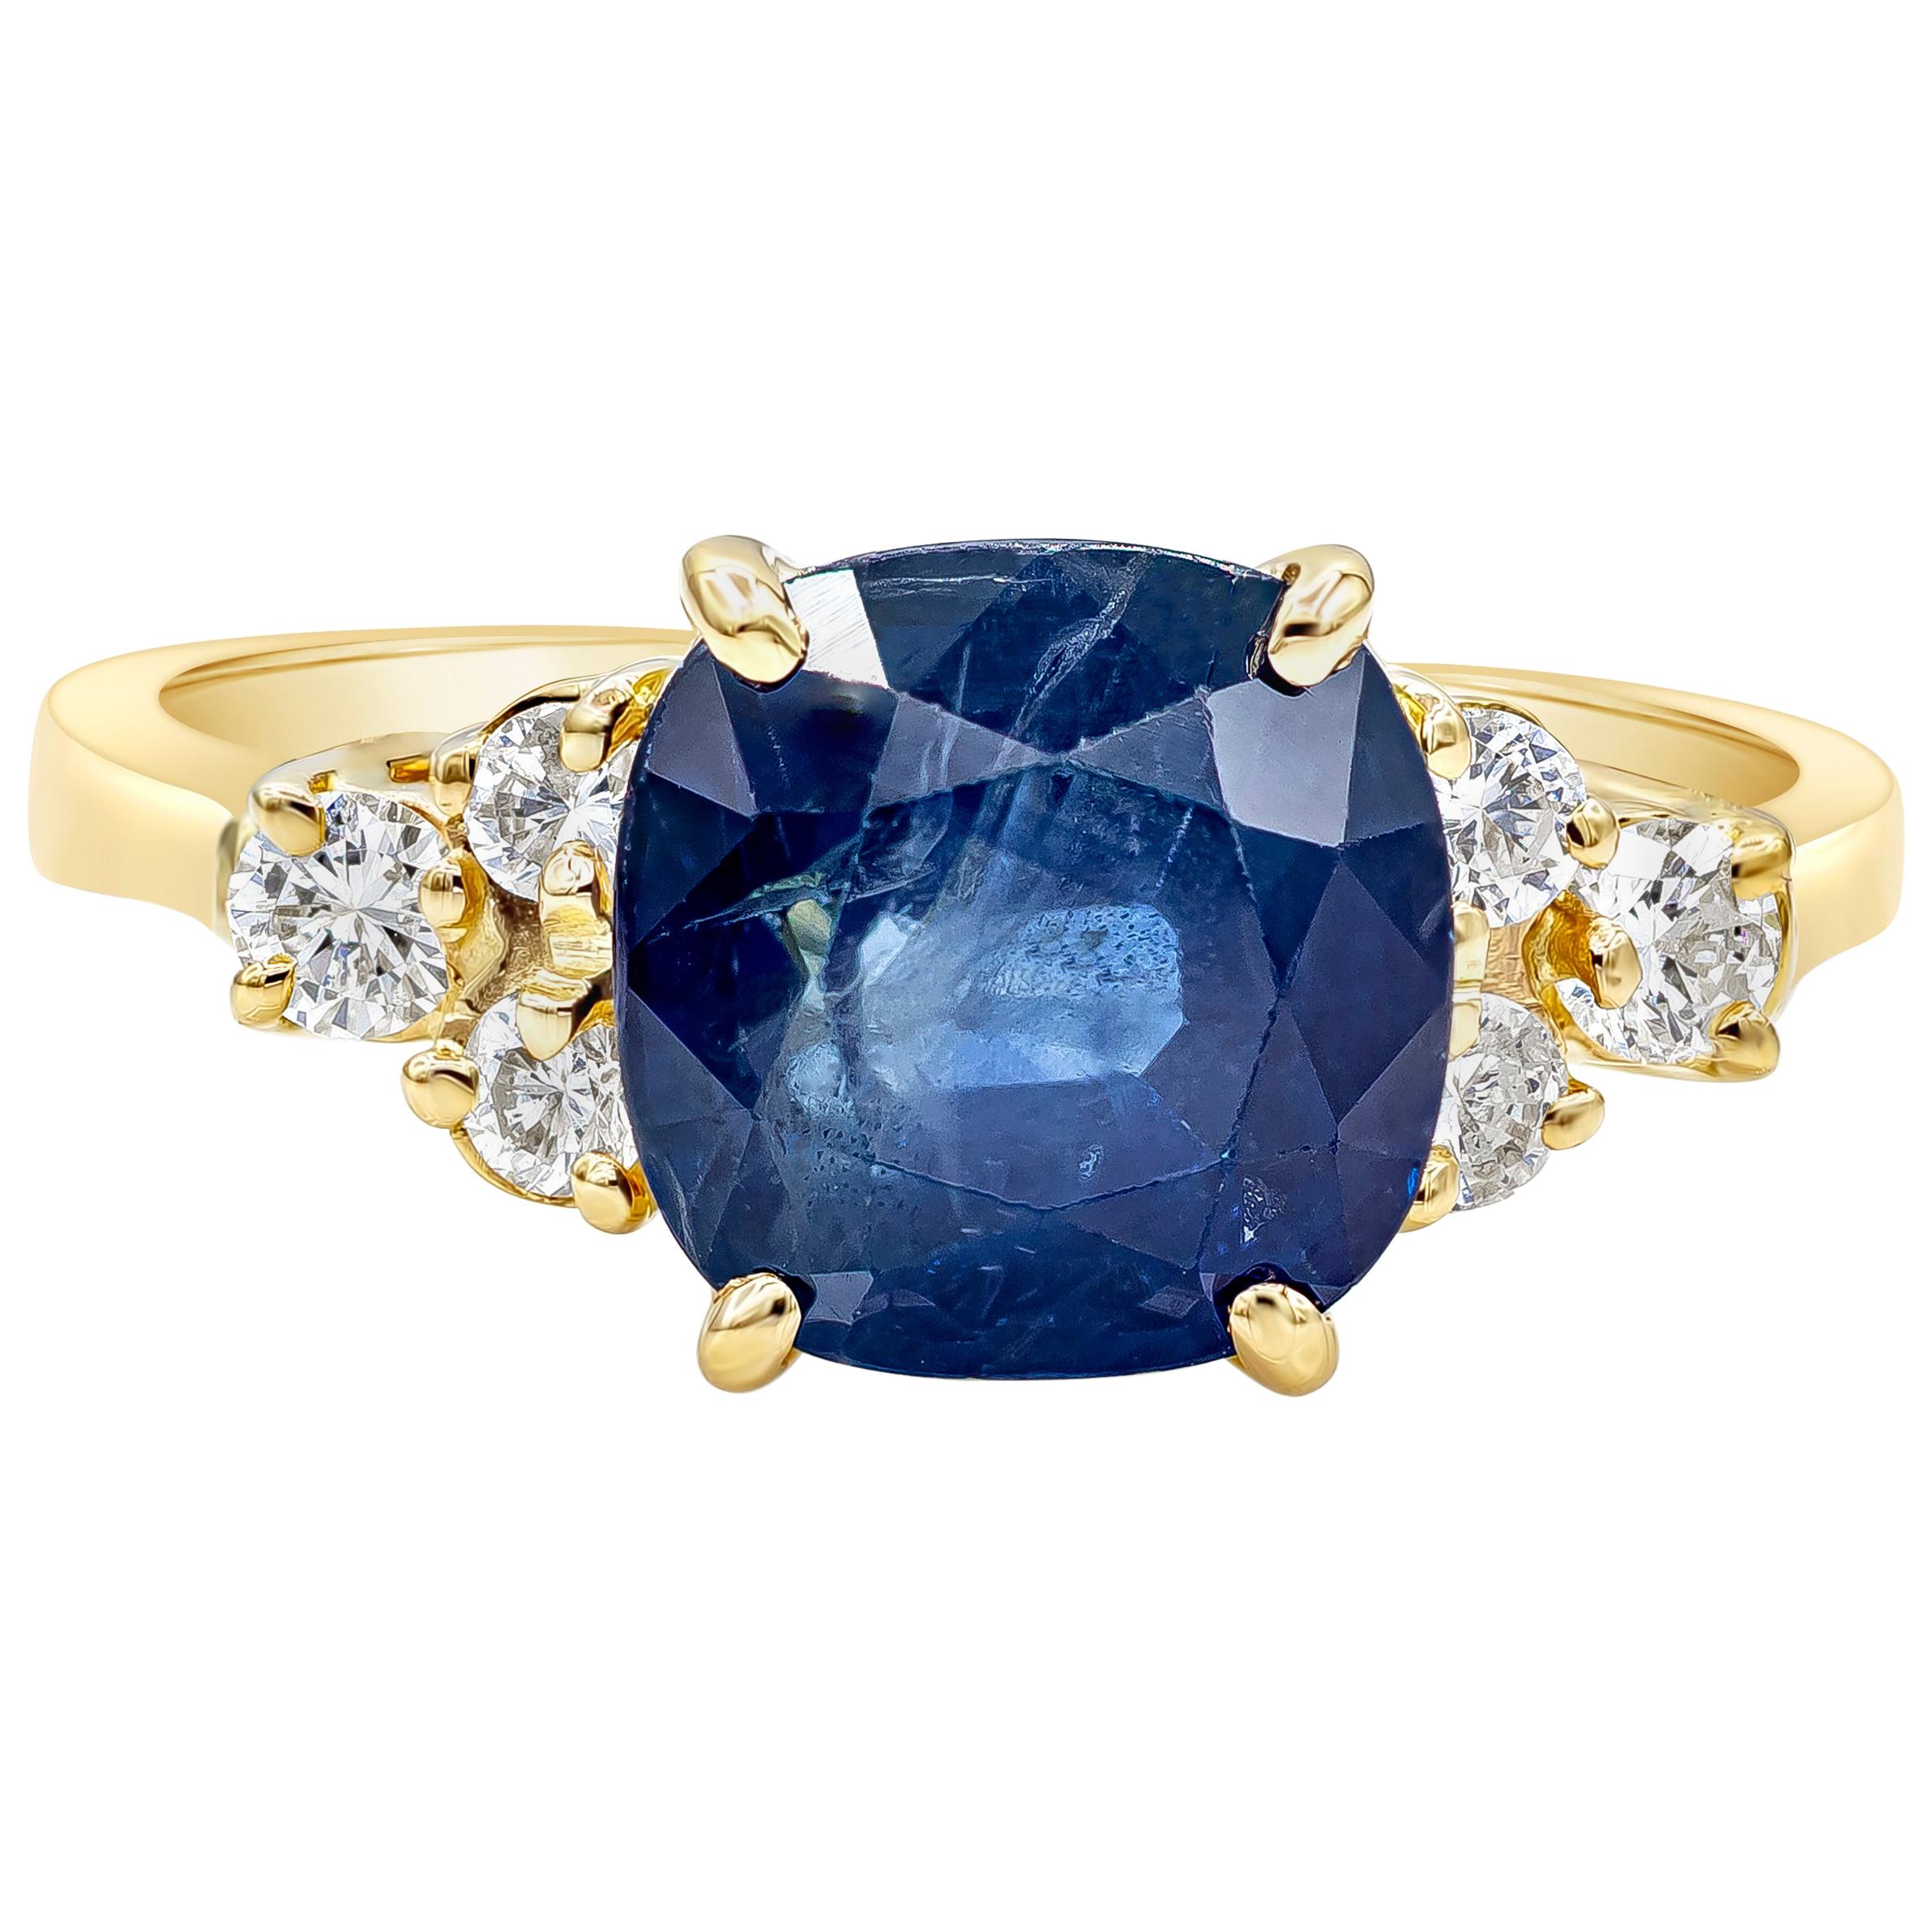 Roman Malakov Bague de fiançailles avec saphir bleu taille coussin de 3,75 carats et diamants